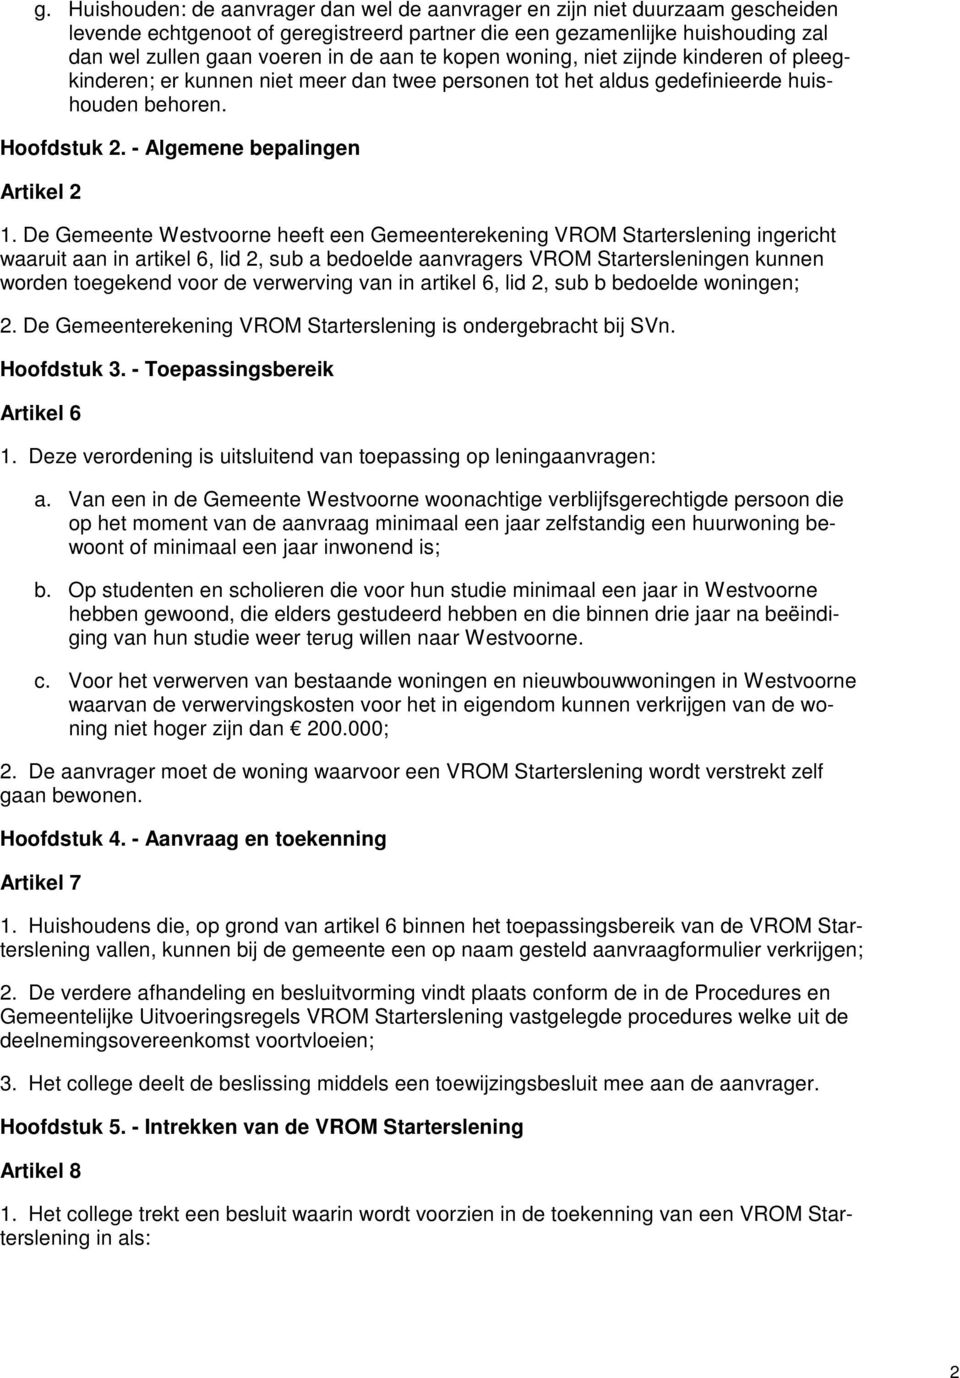 De Gemeente Westvoorne heeft een Gemeenterekening VROM Starterslening ingericht waaruit aan in artikel 6, lid 2, sub a bedoelde aanvragers VROM Startersleningen kunnen worden toegekend voor de